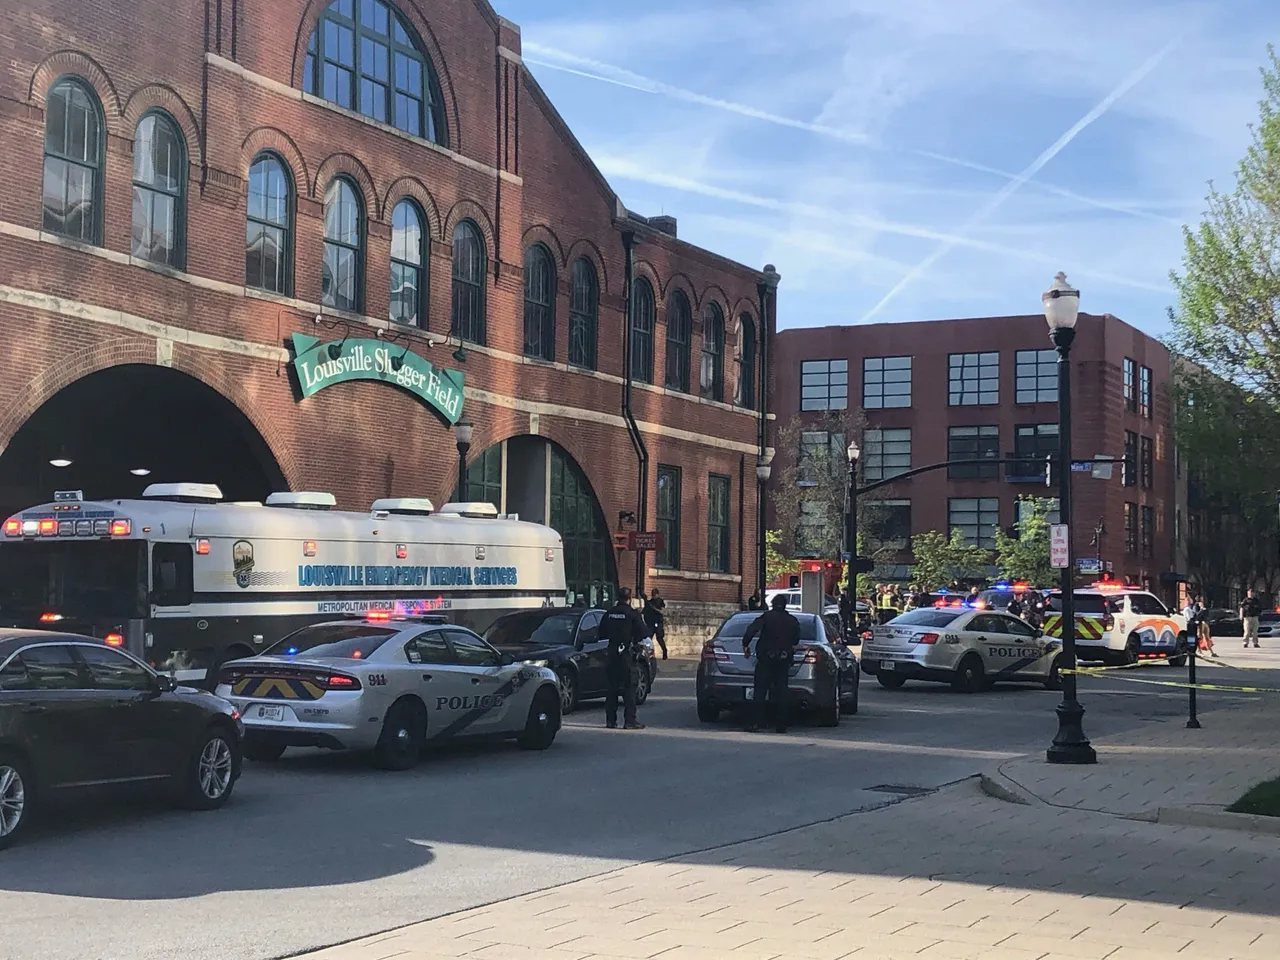 美國肯塔基州路易斯維爾該市中心的史拉格棒球場附近發生槍擊事件，造成5人死亡、6人。受傷路透社